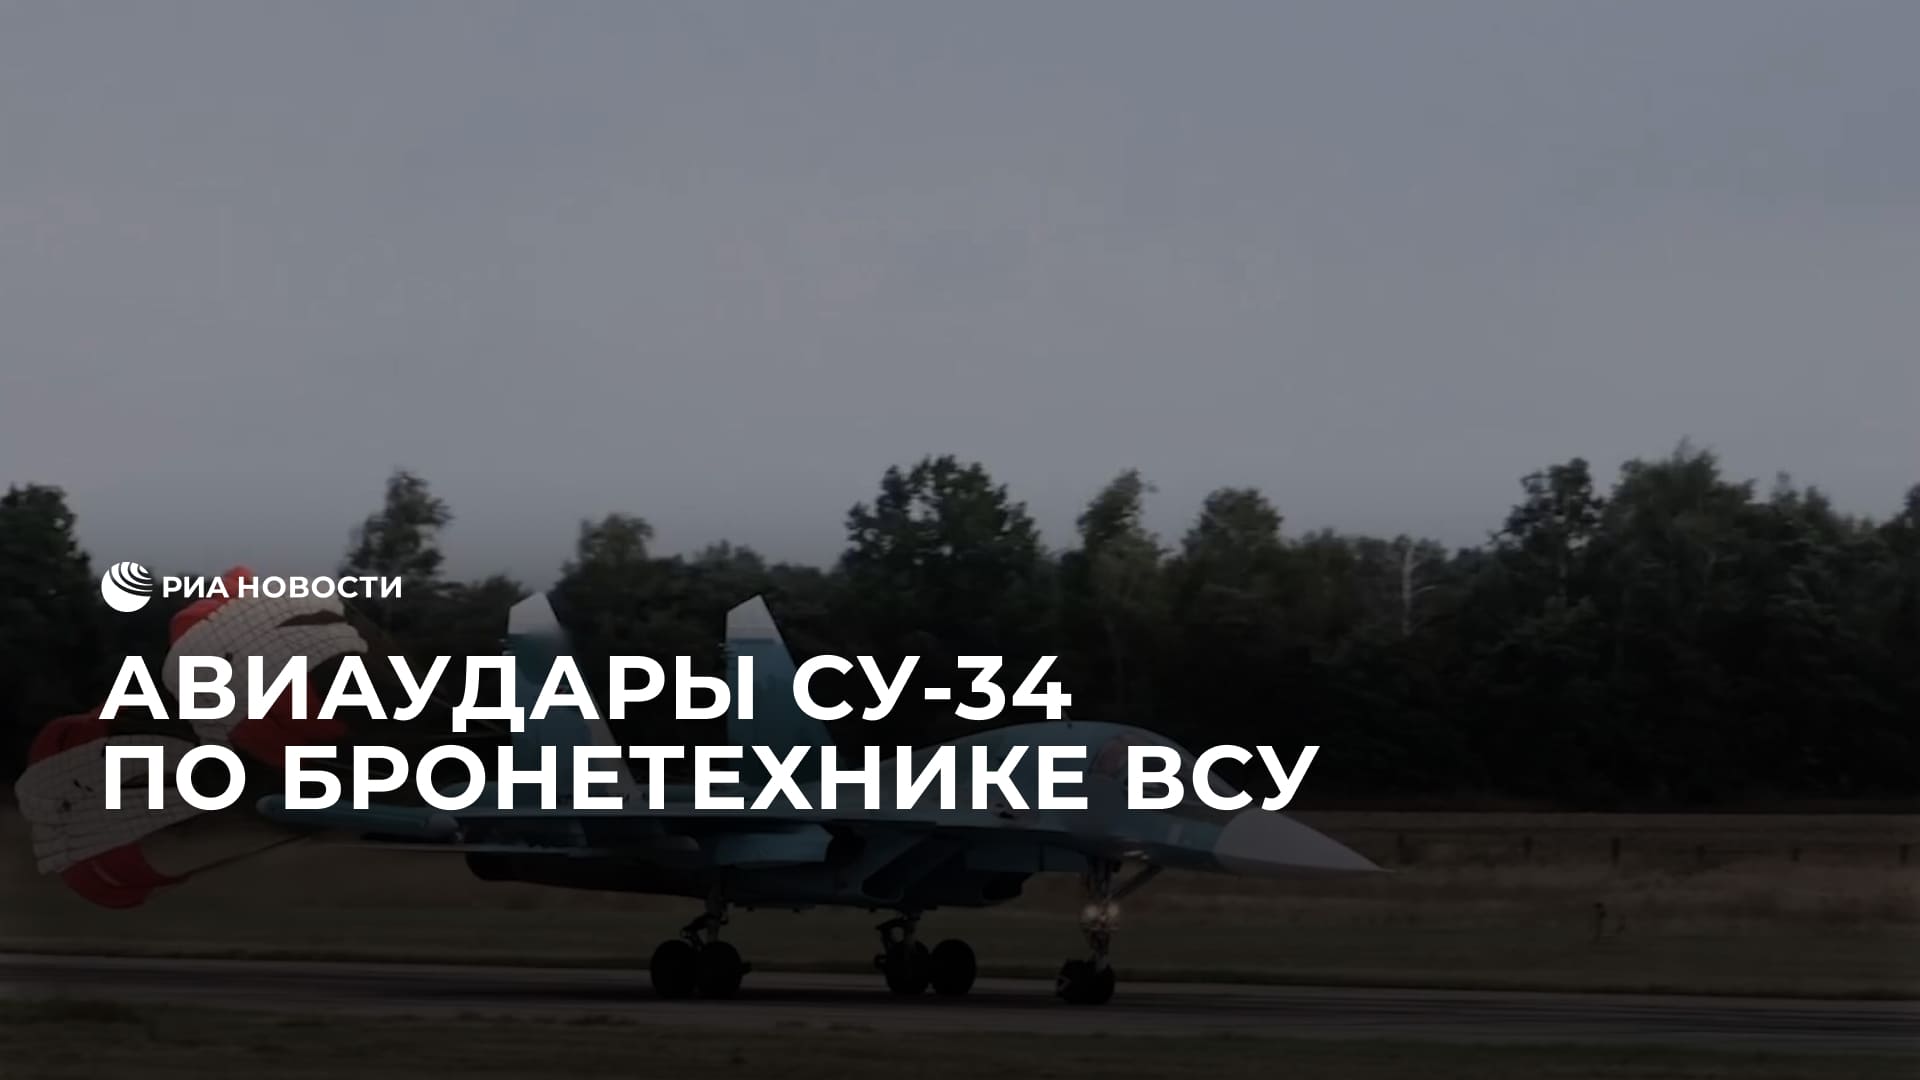 Авиаудары Су-34  по командно-наблюдательным пунктам и бронетехнике ВСУ